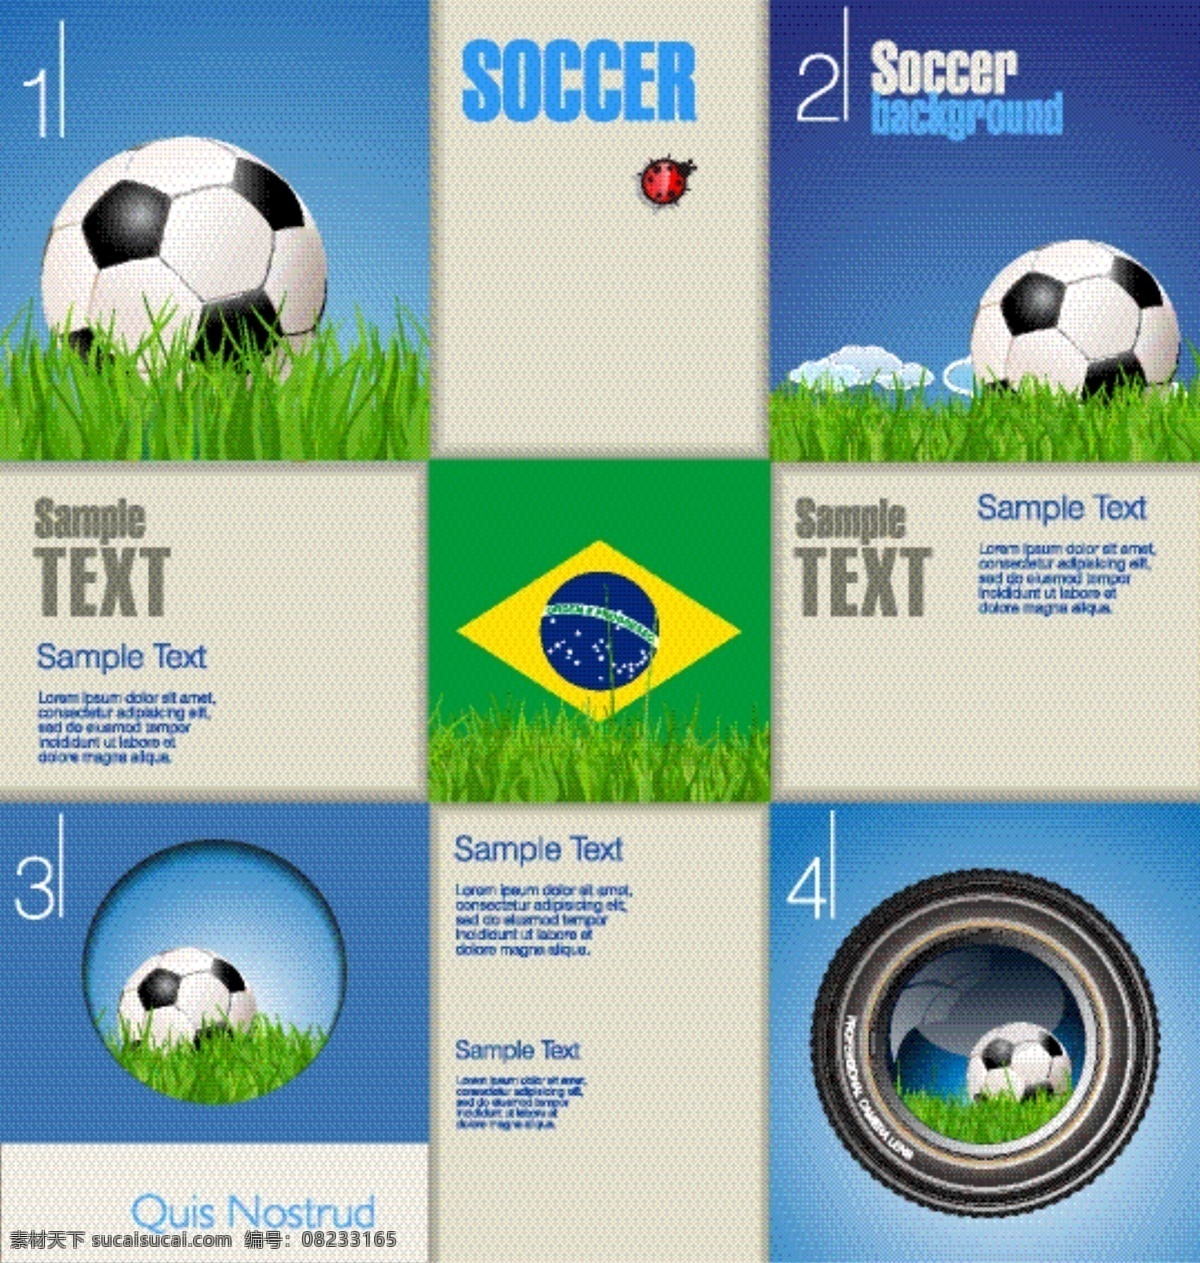 巴西 世界杯 图标 模板下载 巴西国旗 草地 足球 足球赛事 足球比赛 体育运动 生活百科 矢量素材 白色